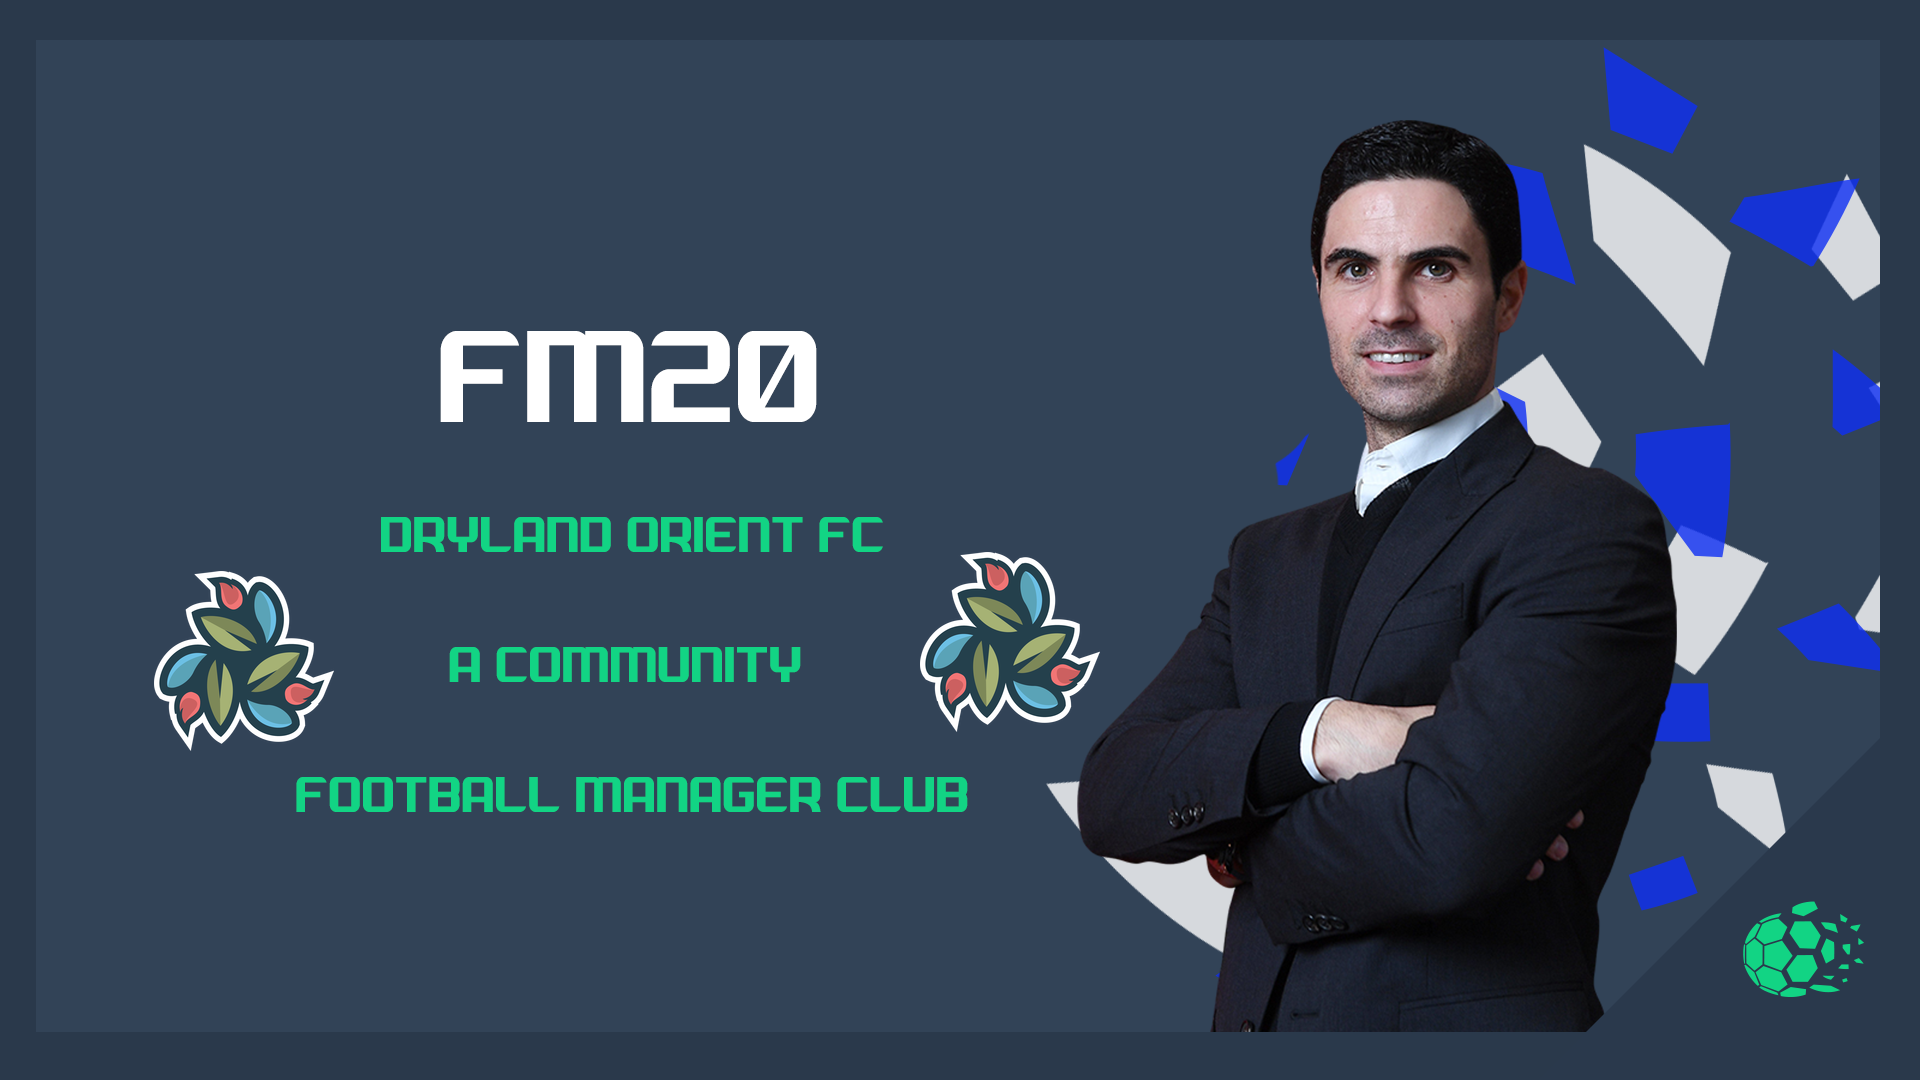 FM20 Dryland Orient F.C - A Community Football Manager Club